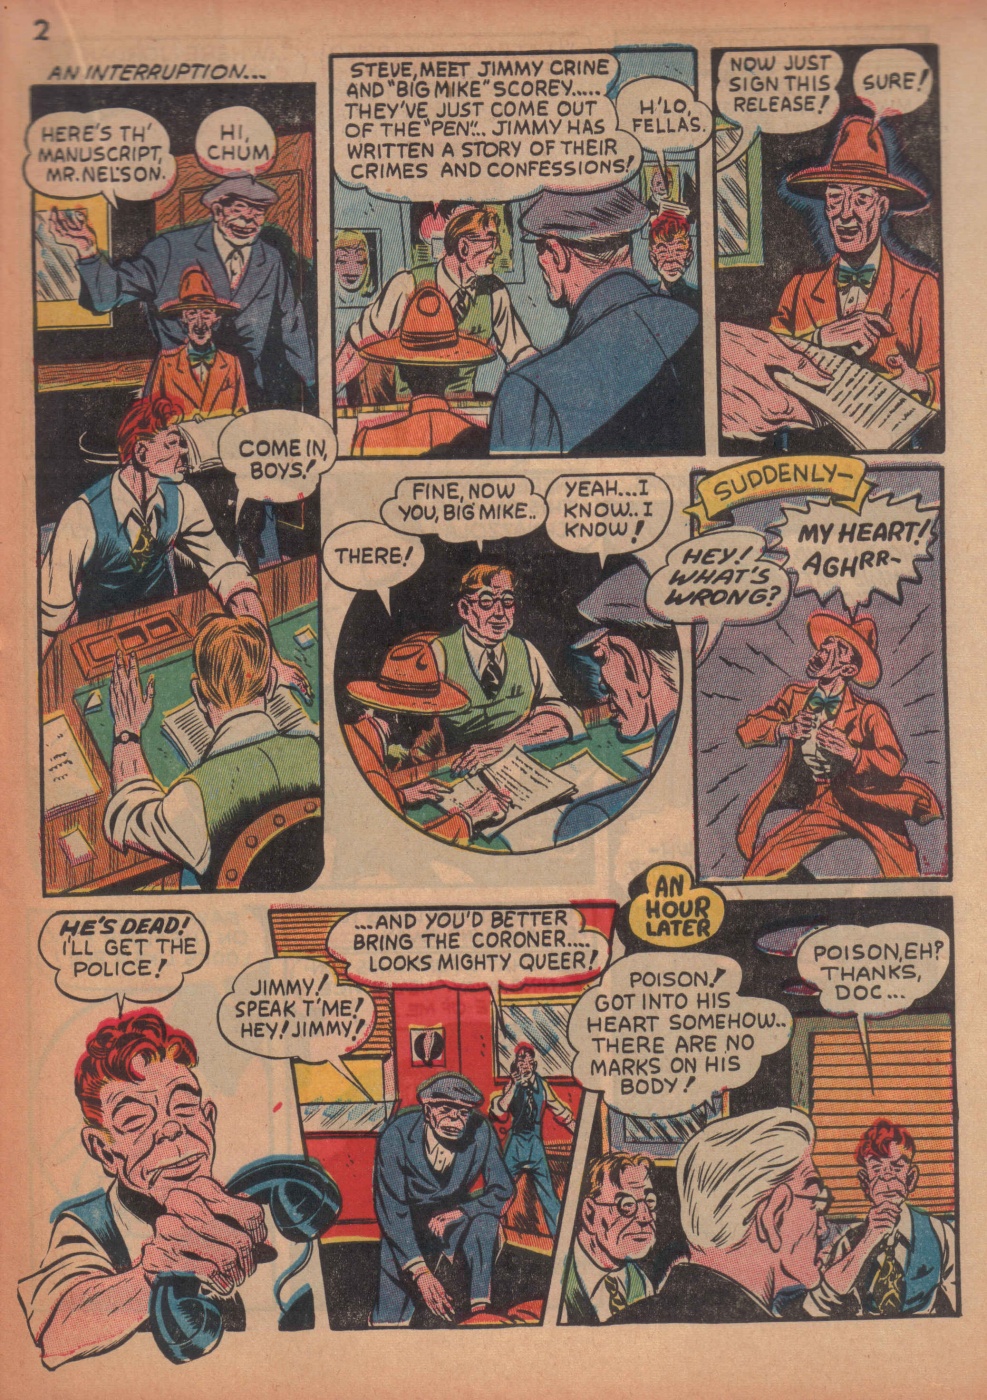 Super Dooper Funny Comics (19)